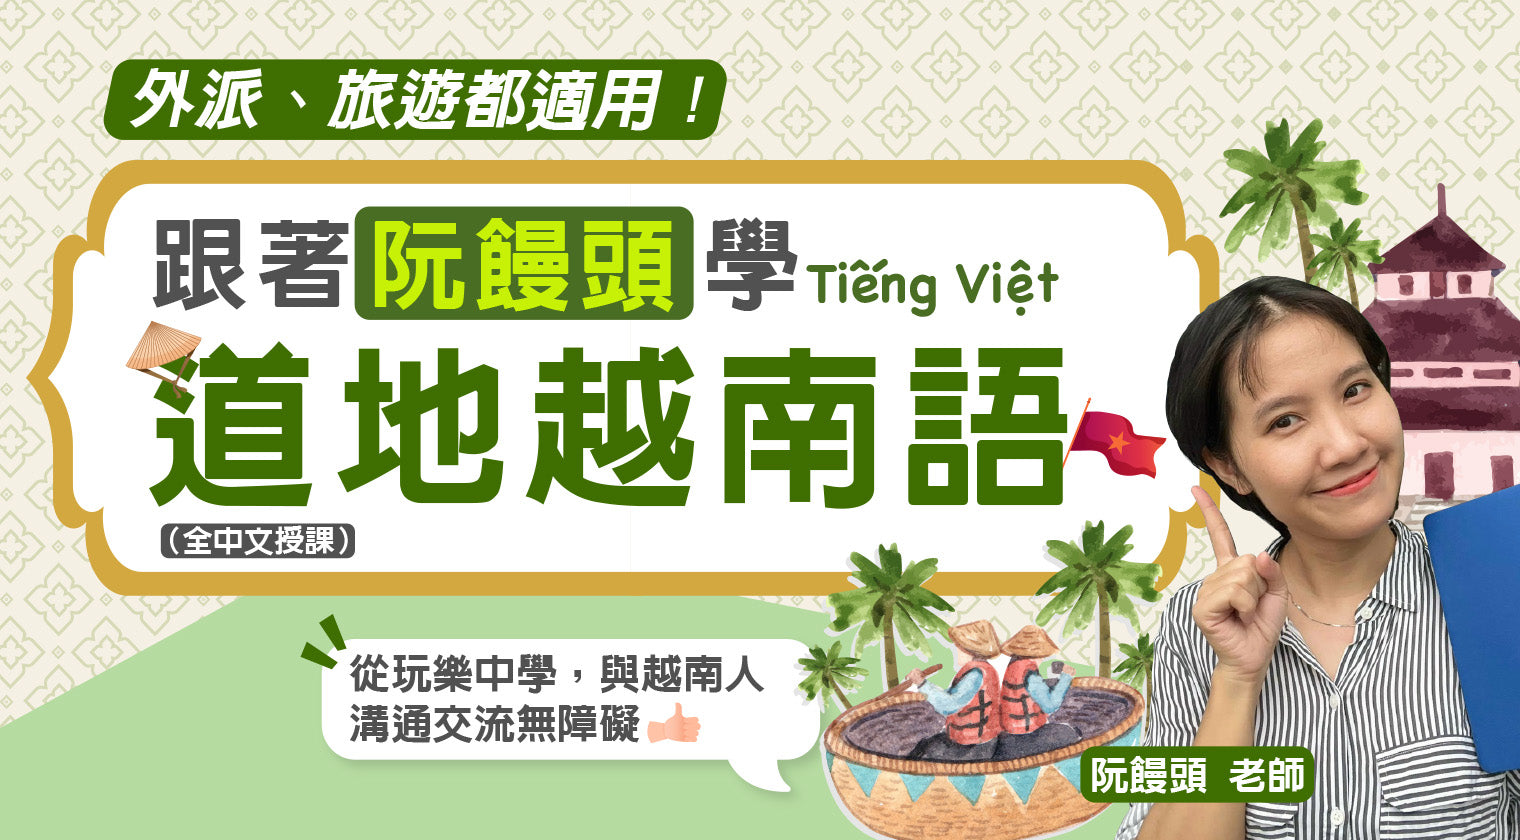 跟著阮饅頭學道地越南語：外派、旅遊都適用！